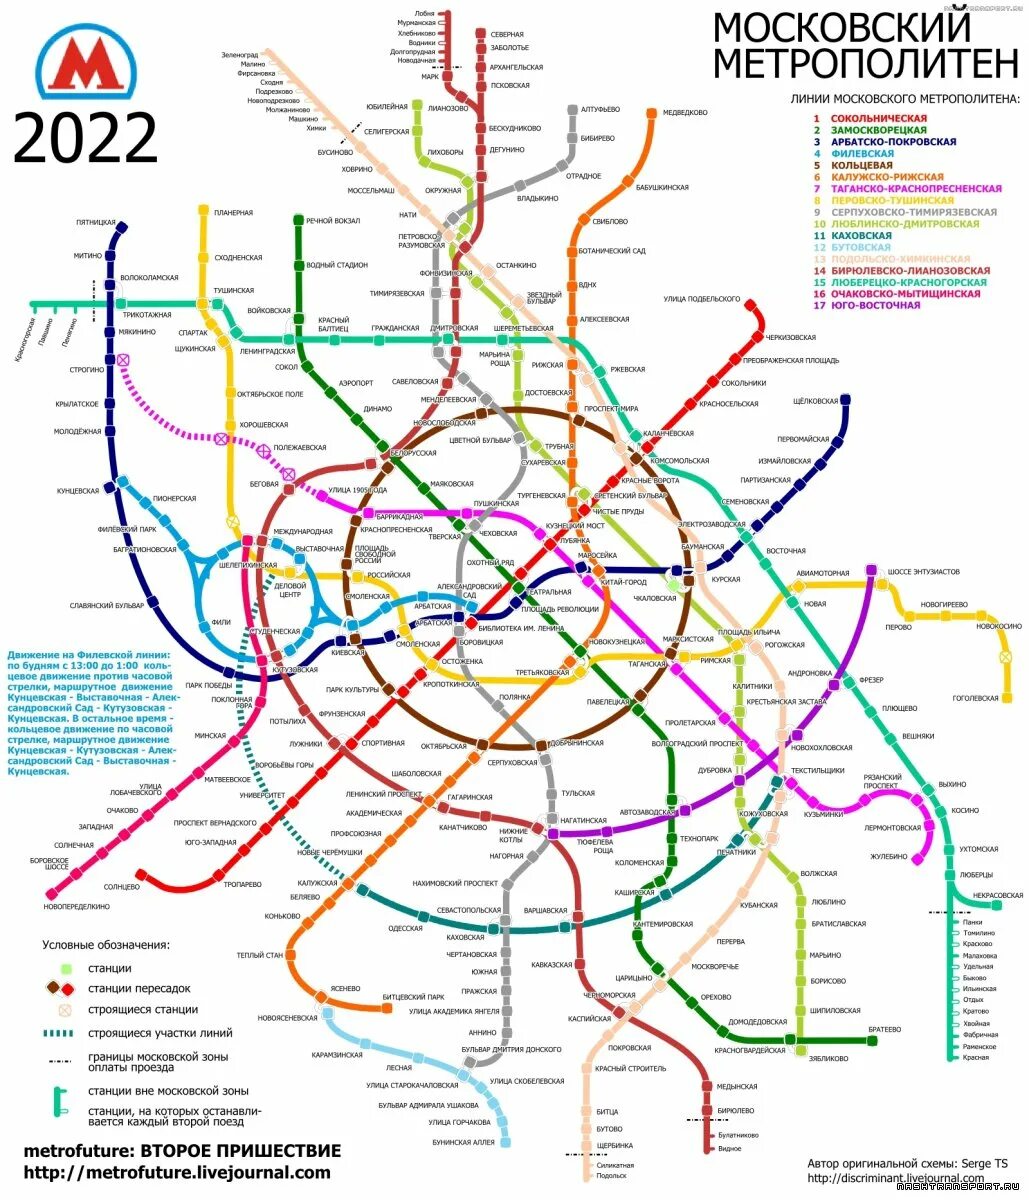 Схема метрополитена Москва 2022. Схема метро Московского метрополитена 2022 года. Схема метро Москвы 2022 увеличенную. Новая схема метро Москвы 2022.